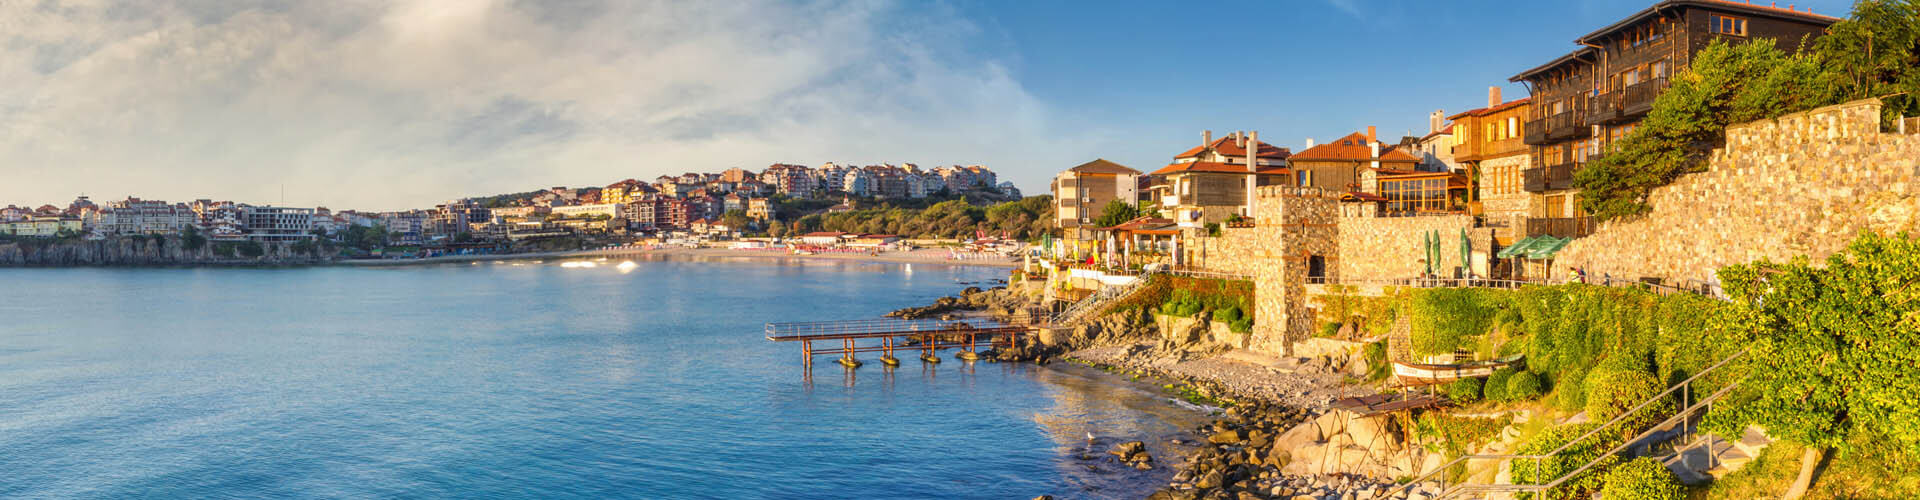 Aussicht Küstenstadt in Bulgarien, Häuser in einer Meeresbucht - mit Auslandskrankenversicherung sicher verreisen!